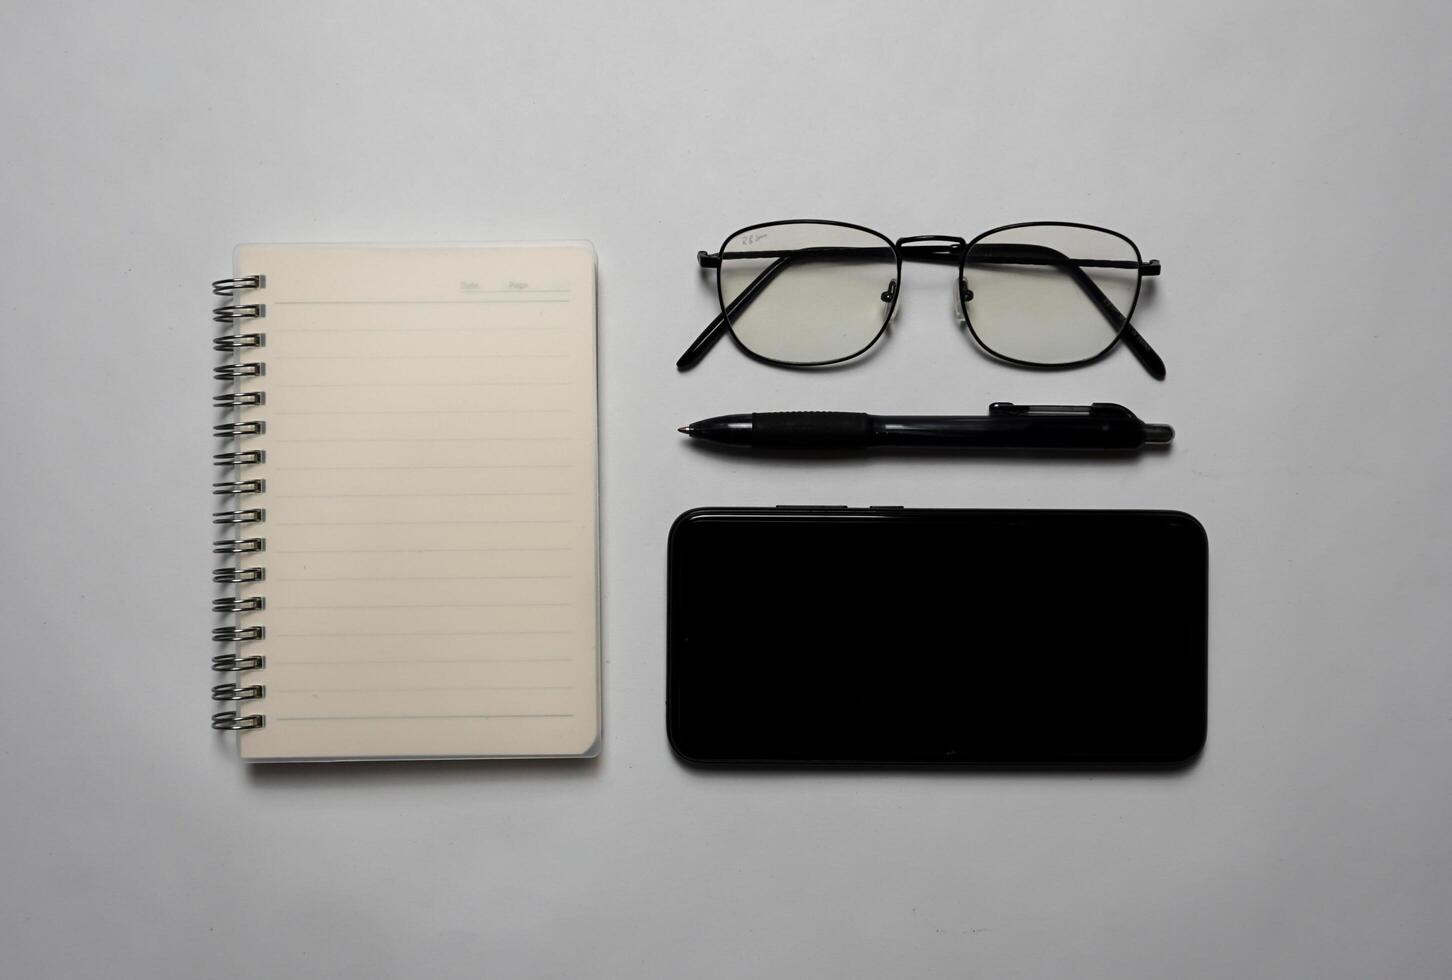 gesehen von über Dort ist ein Notizbuch mit ein Stift, Brille und ein Smartphone. foto